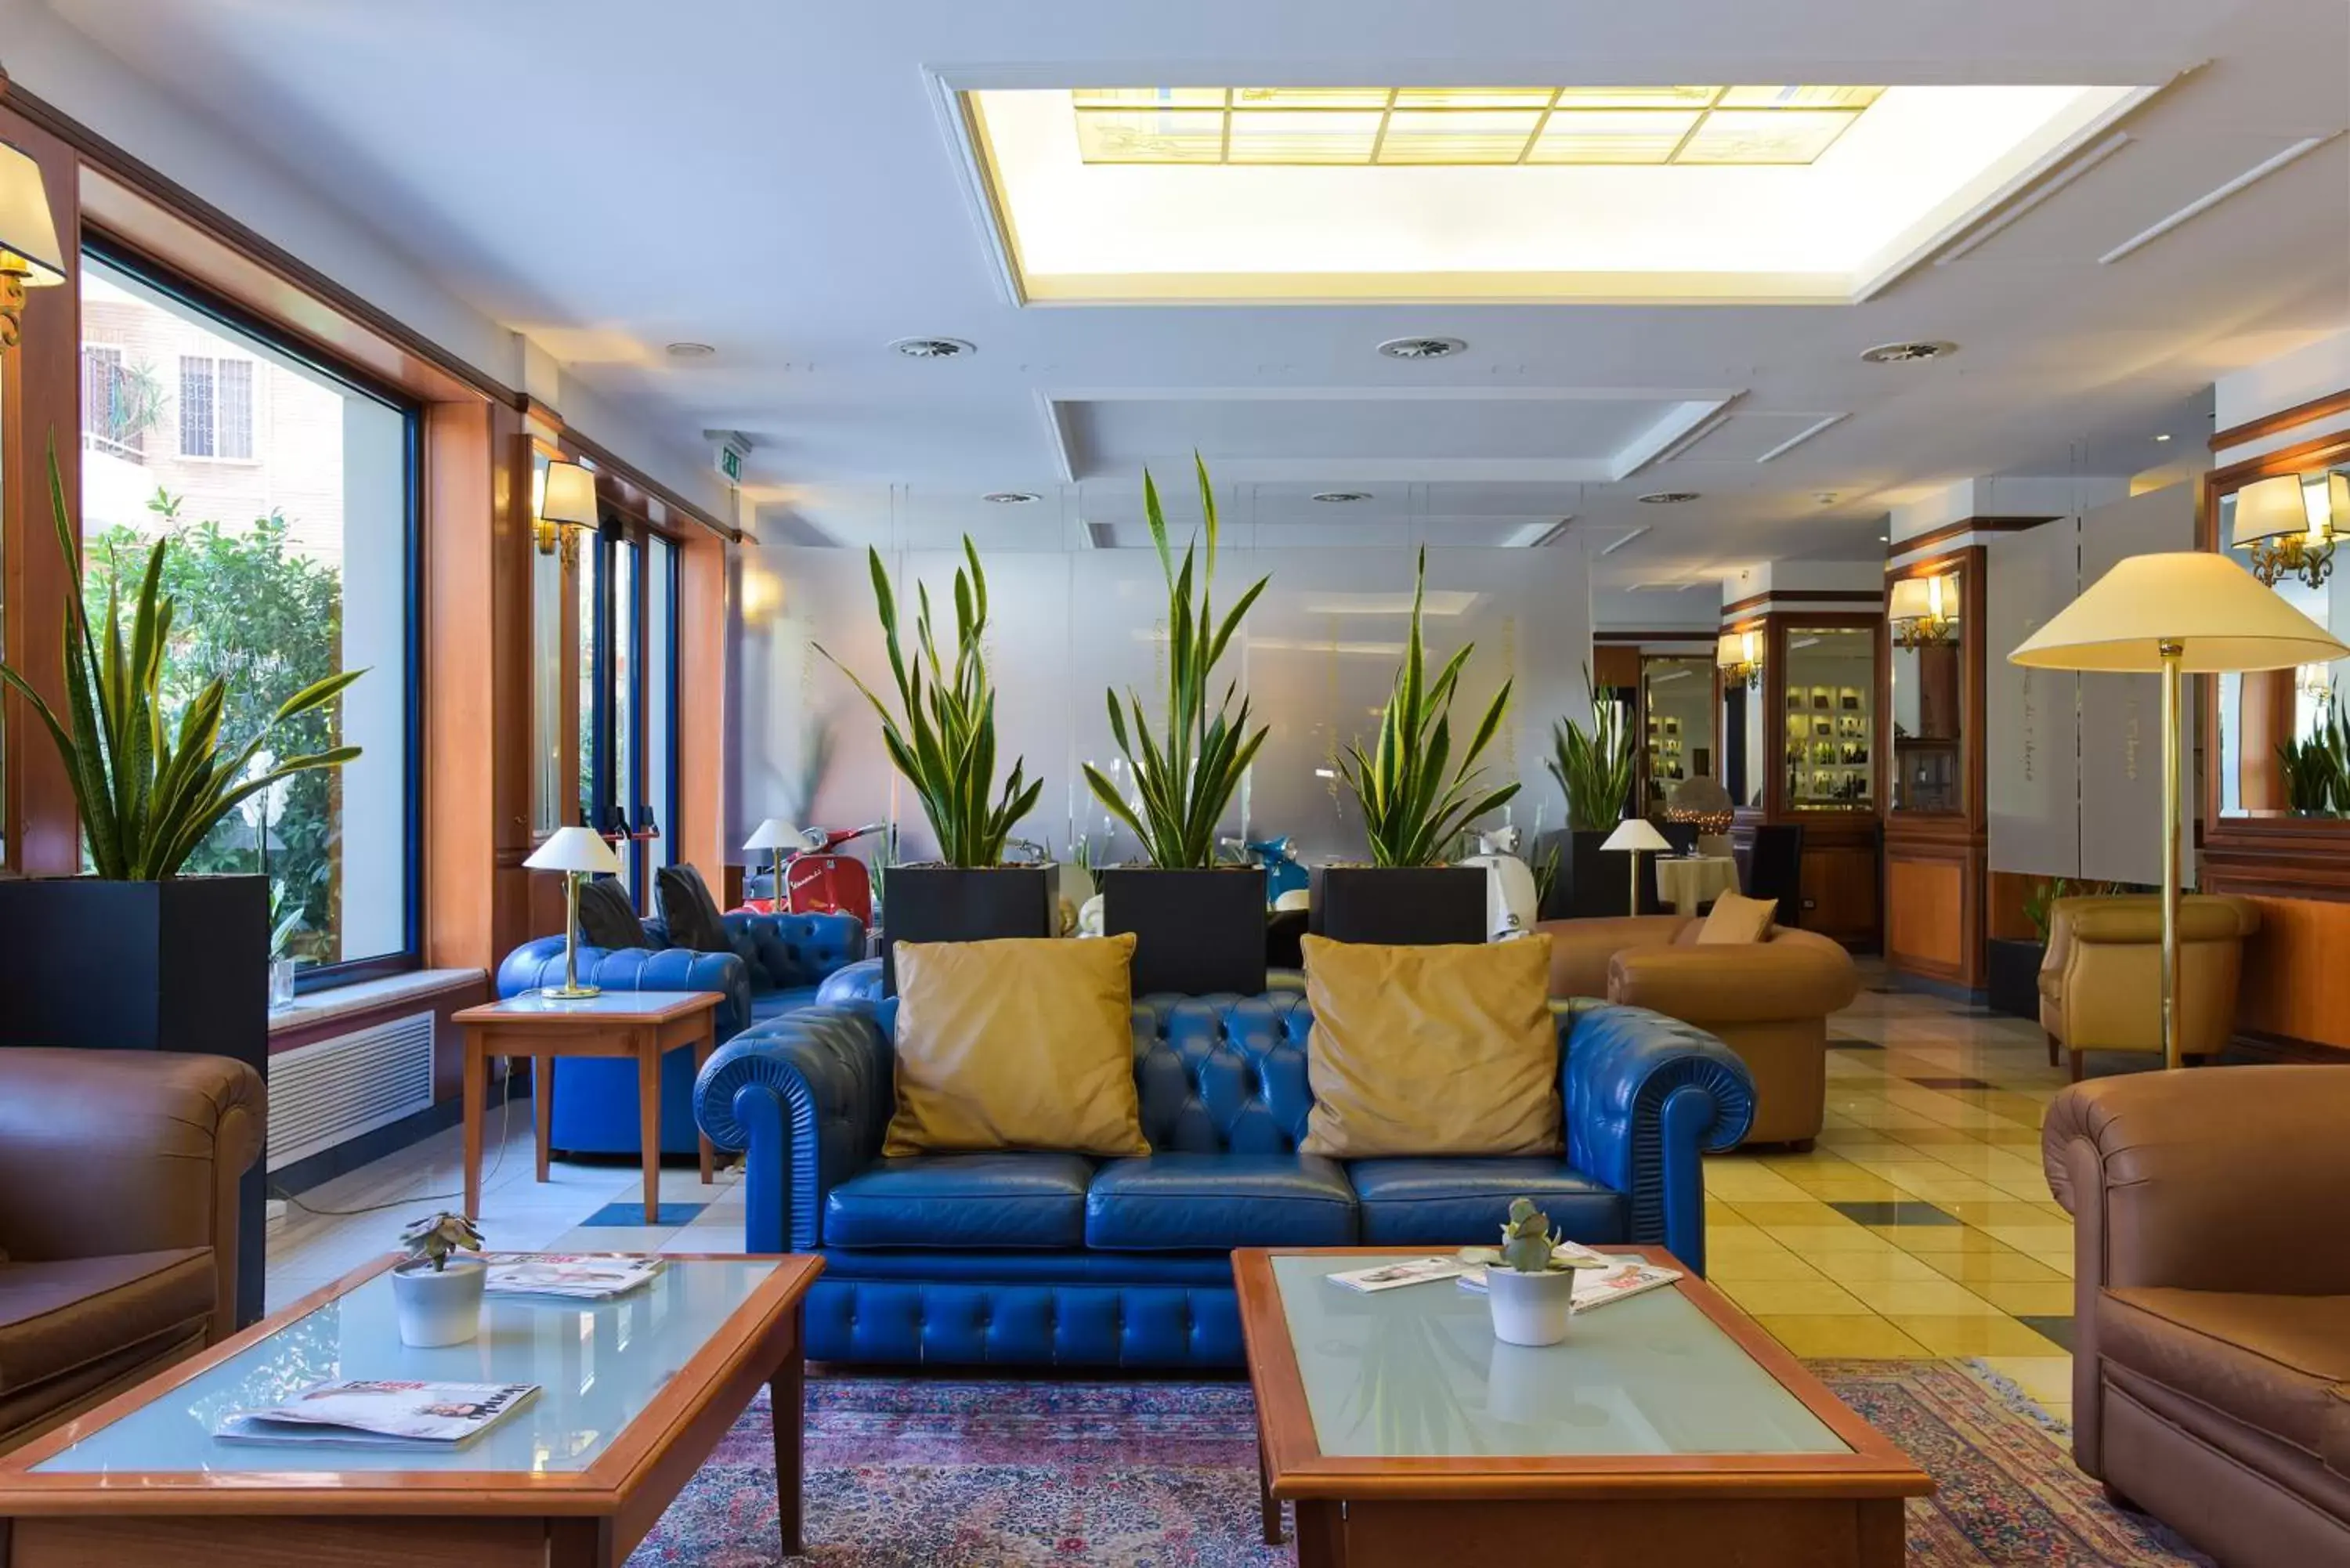 Lobby or reception in Grand Hotel Tiberio